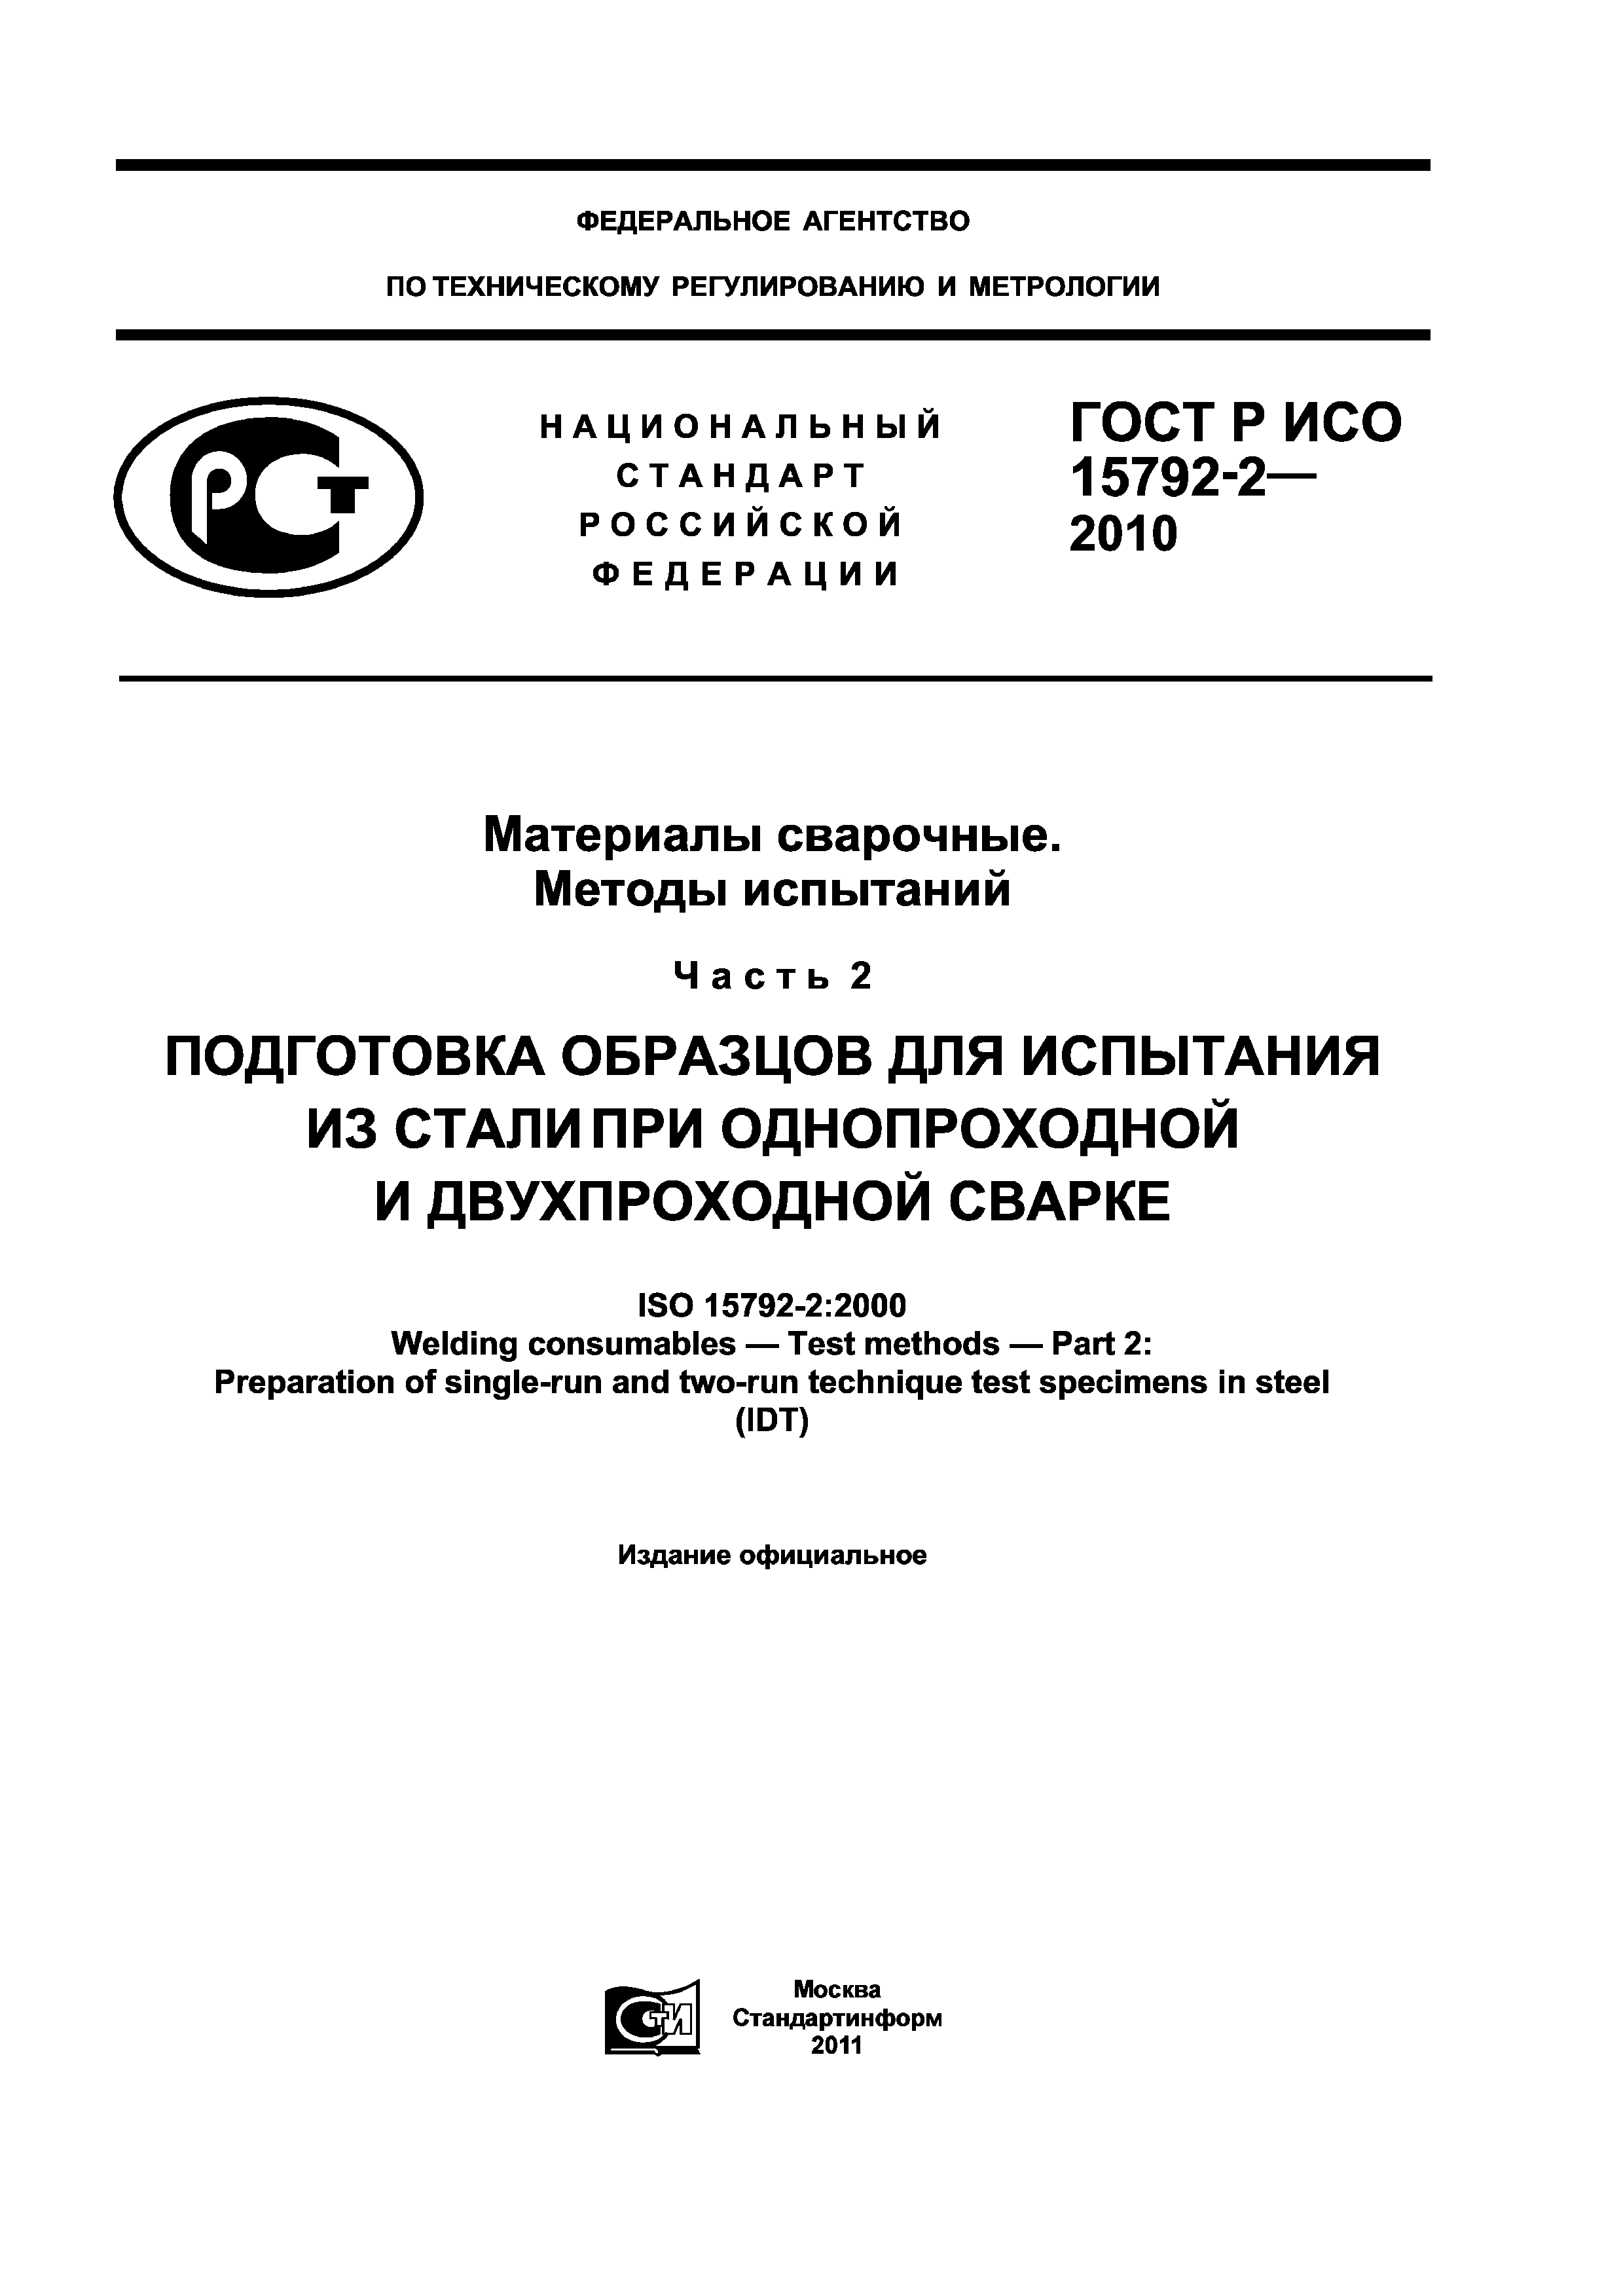 ГОСТ Р ИСО 15792-2-2010